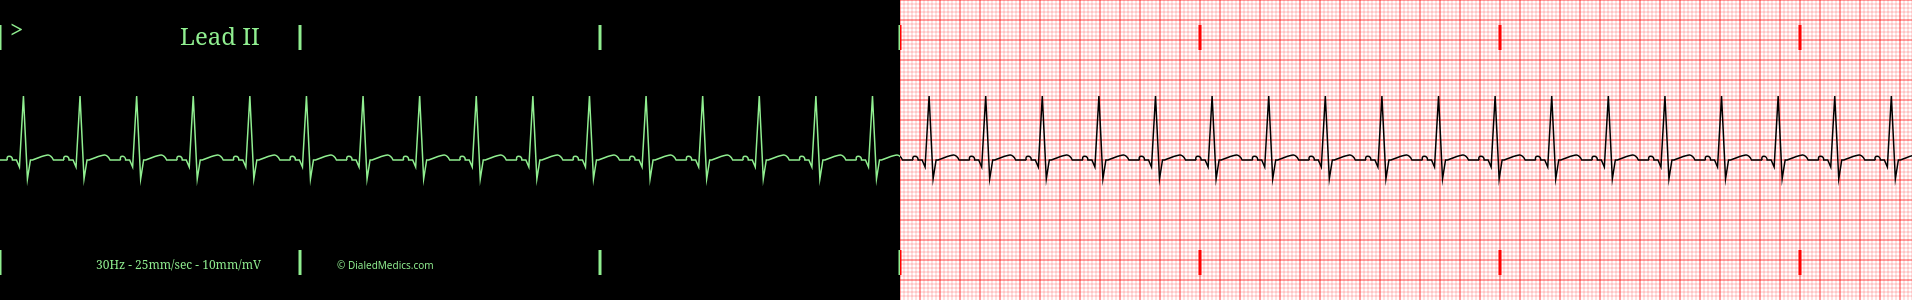 Sinus Tachycardia EKG example, split printout / monitor display.